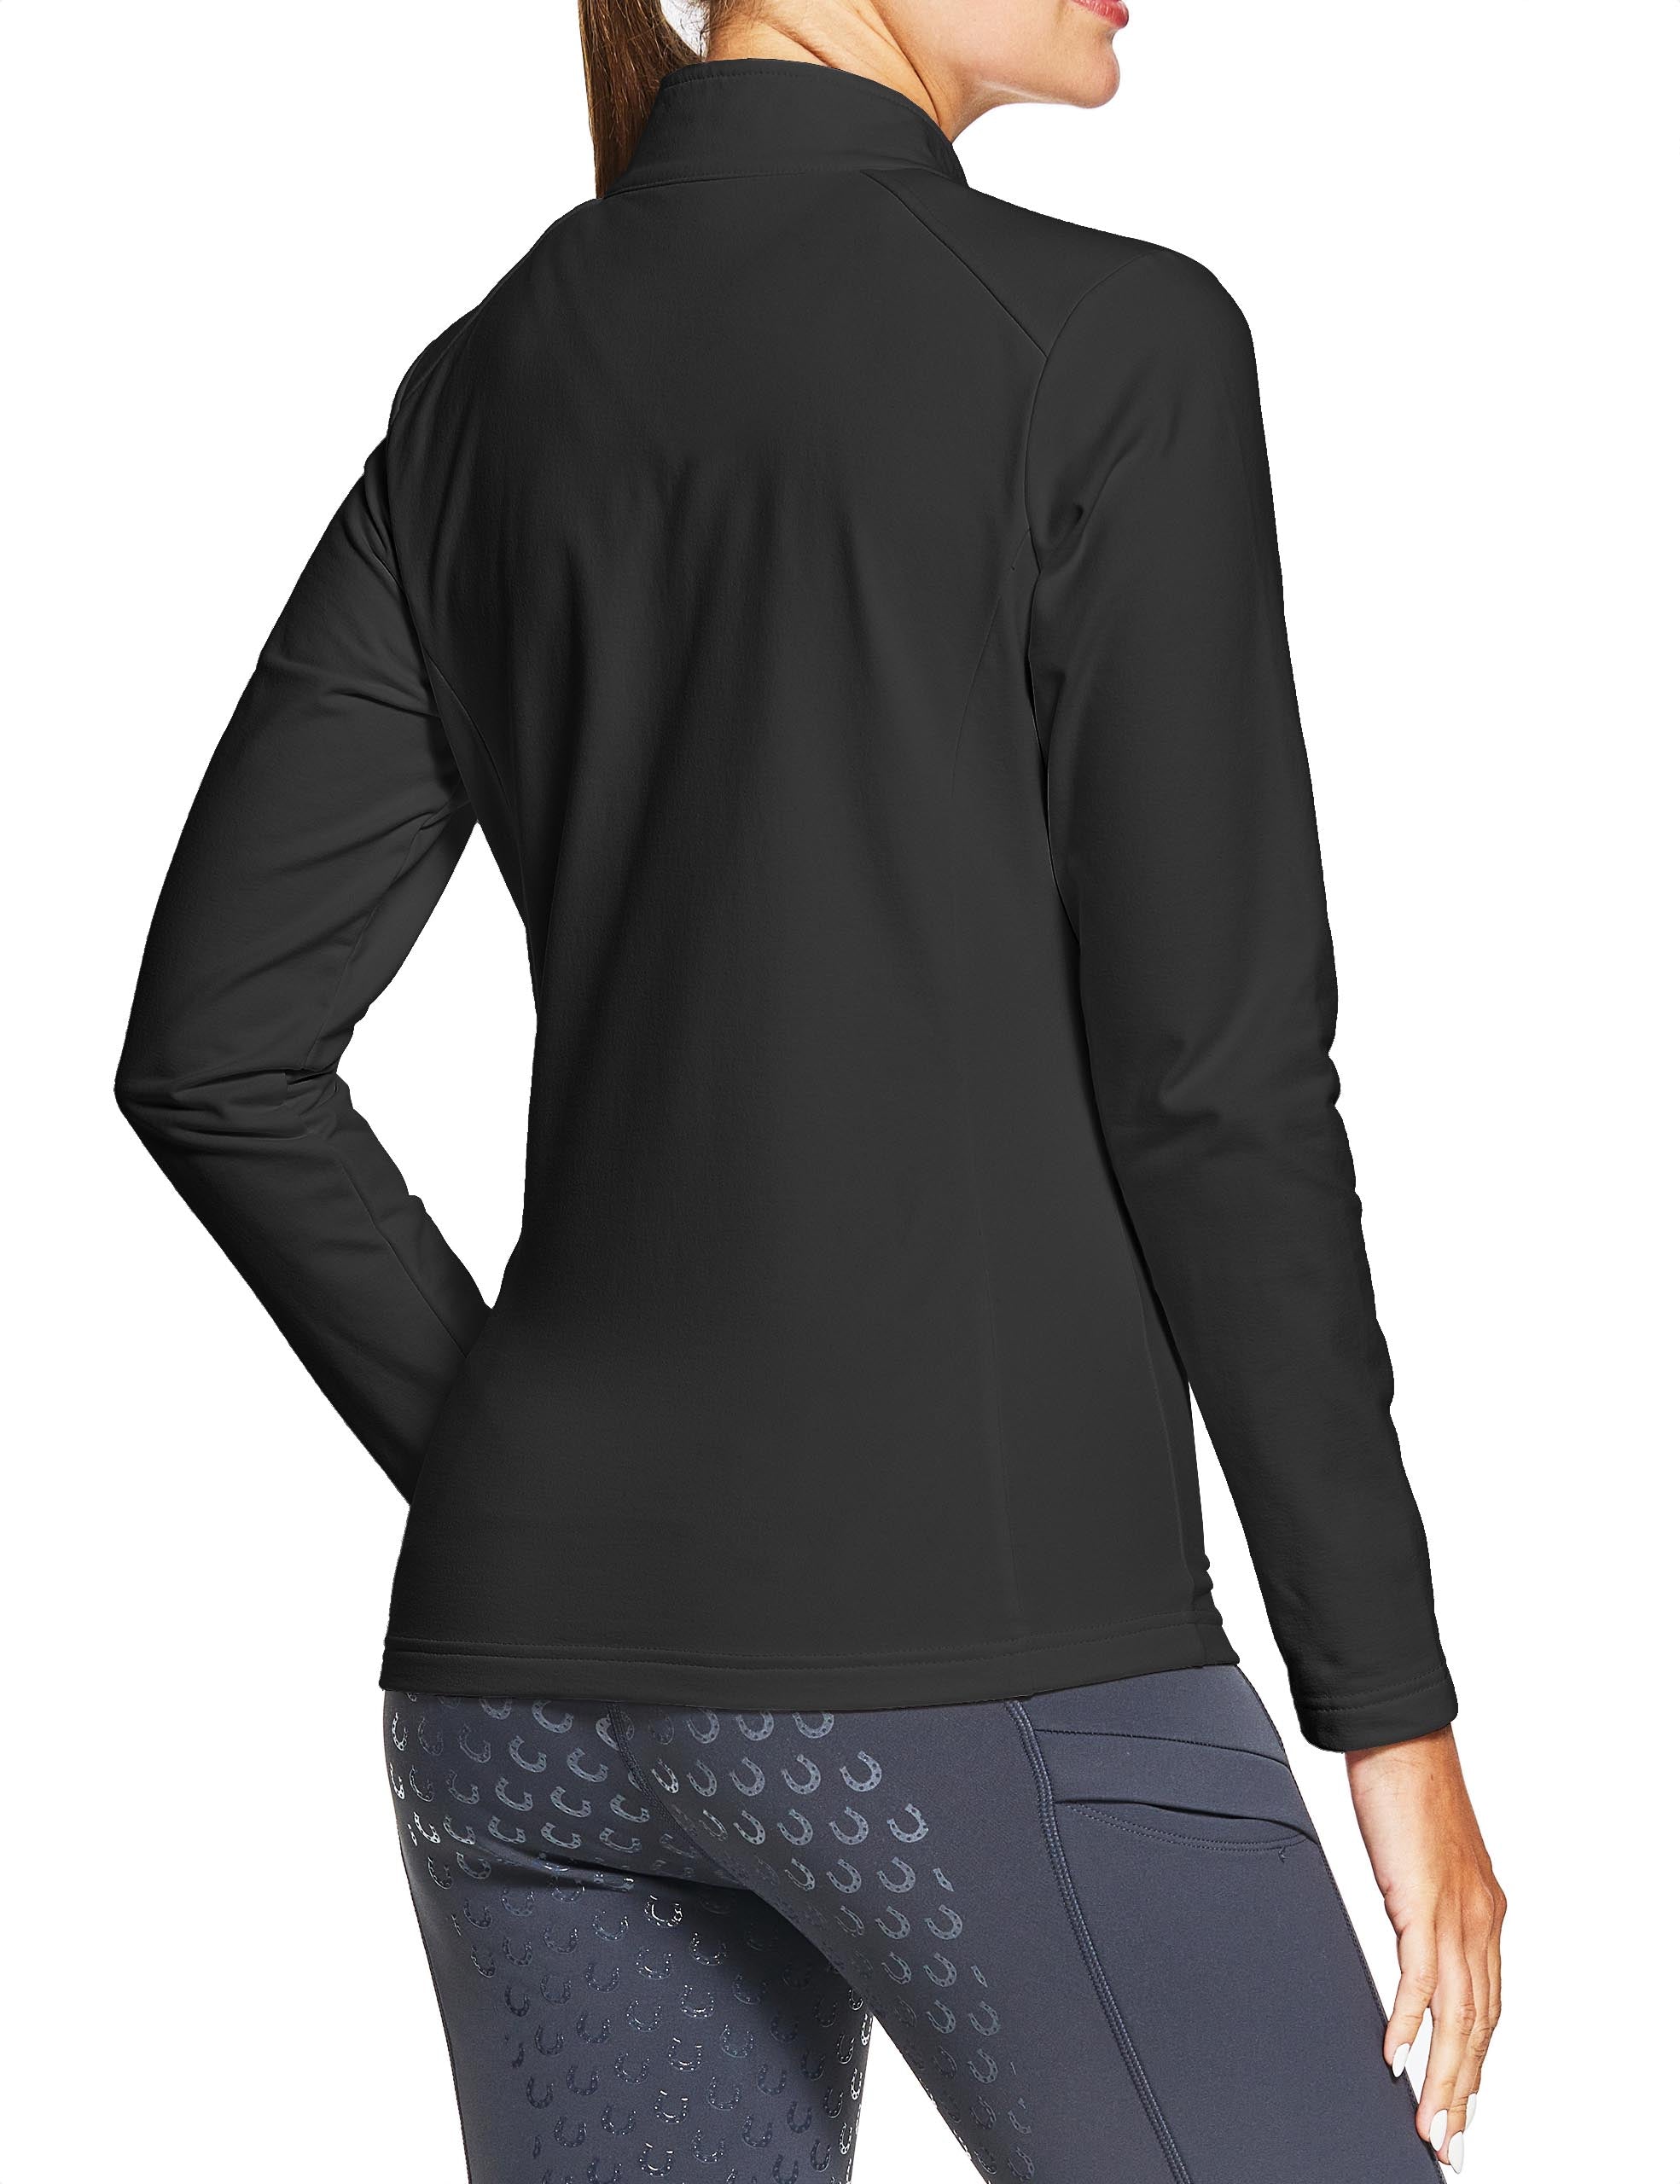 Women 1/4 Zip Shirts Fleece Lined with Zipper Pockets